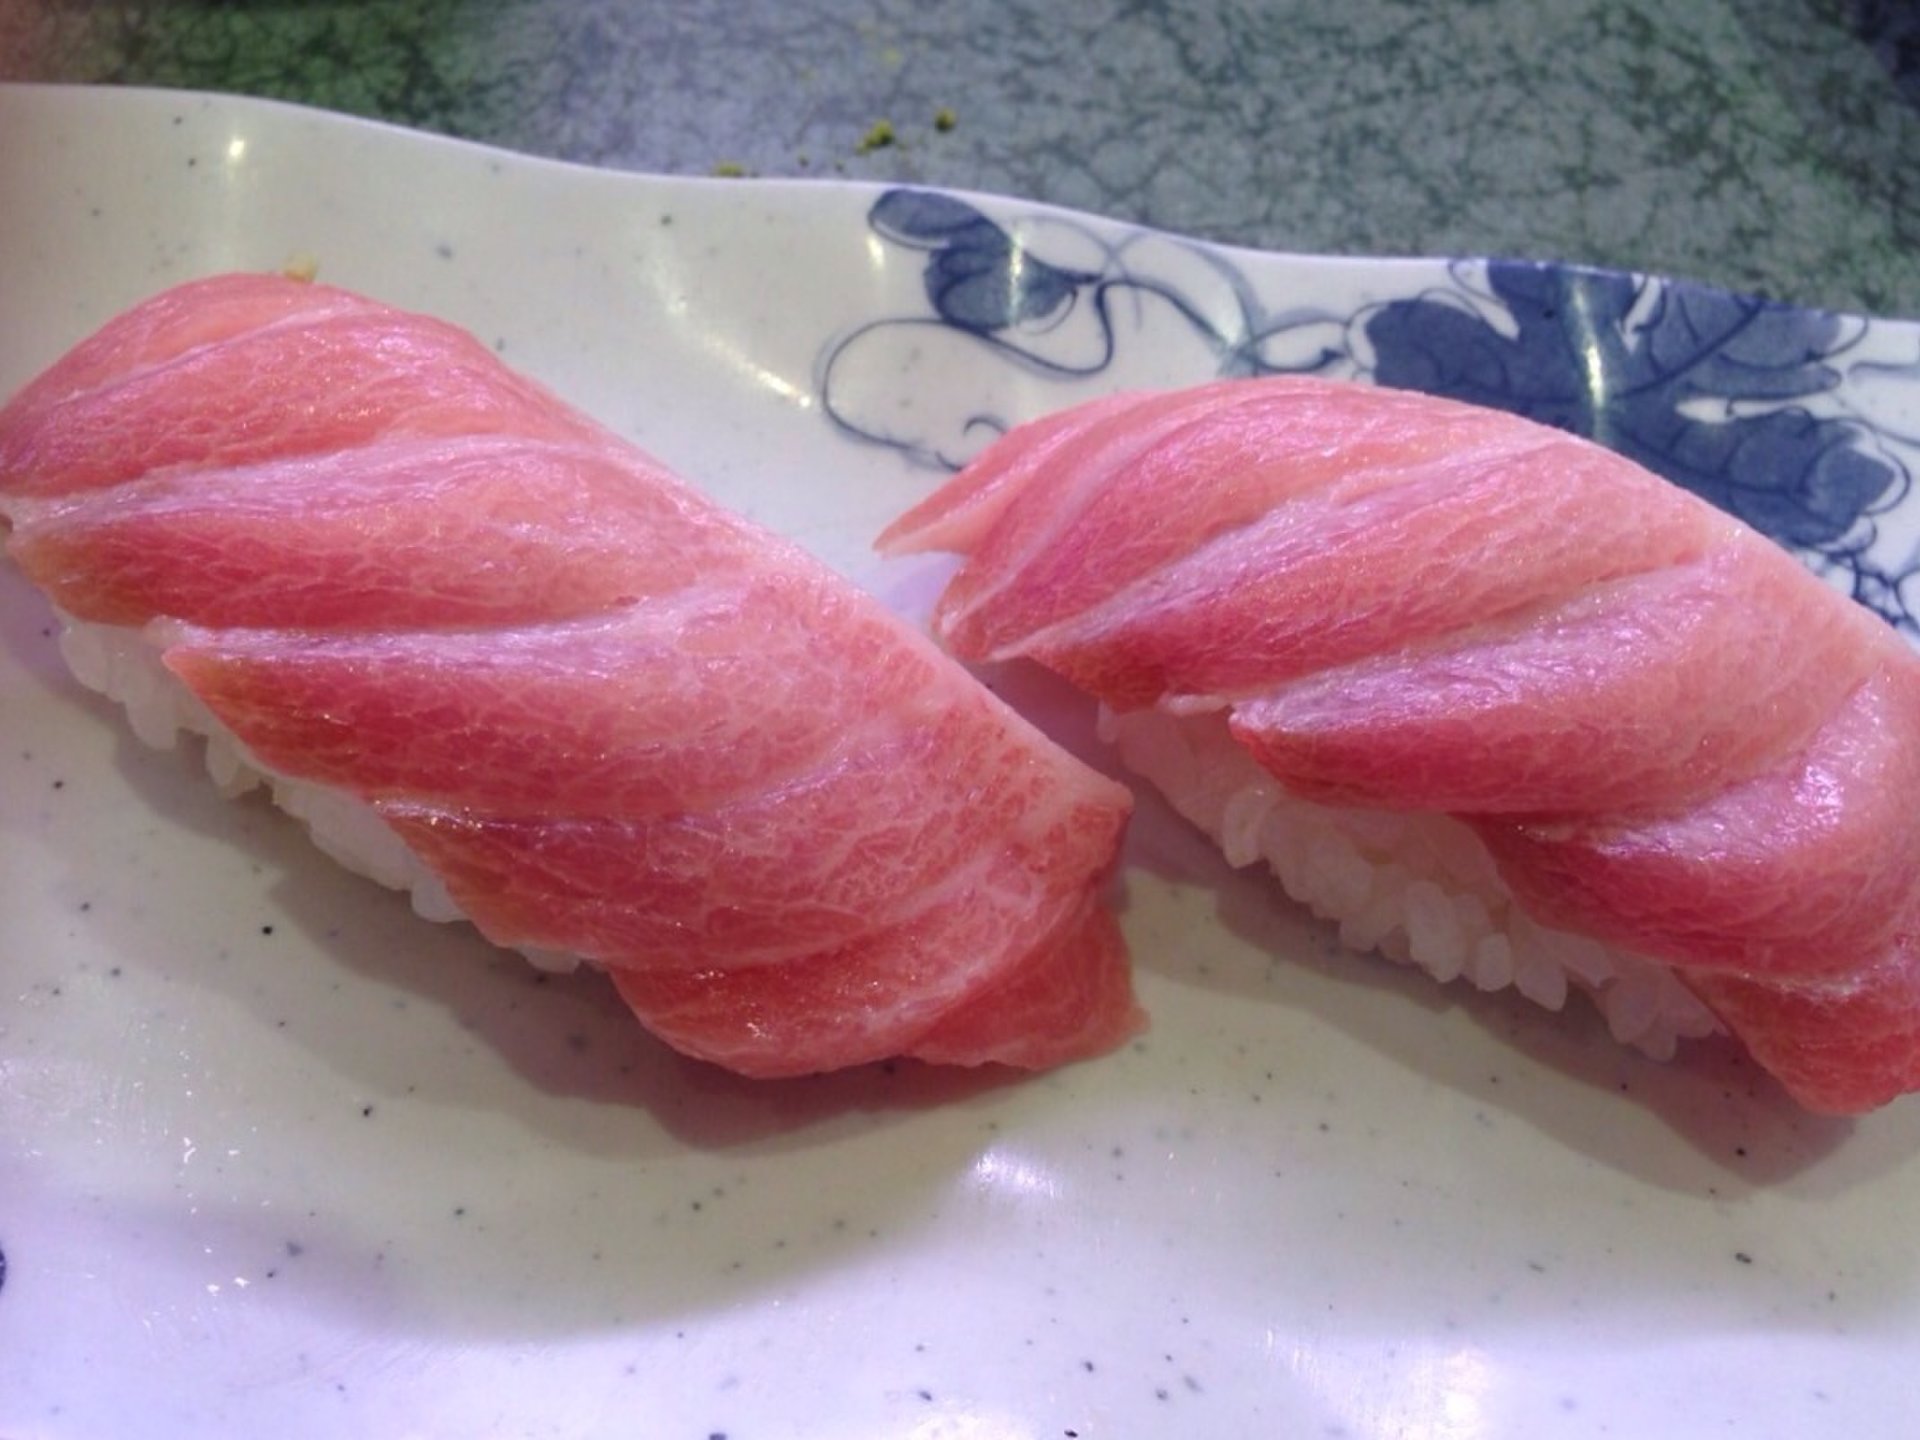 米子の地魚回転寿司 旅行先でおいしい地魚寿司を食べよう 寿司みなとへ